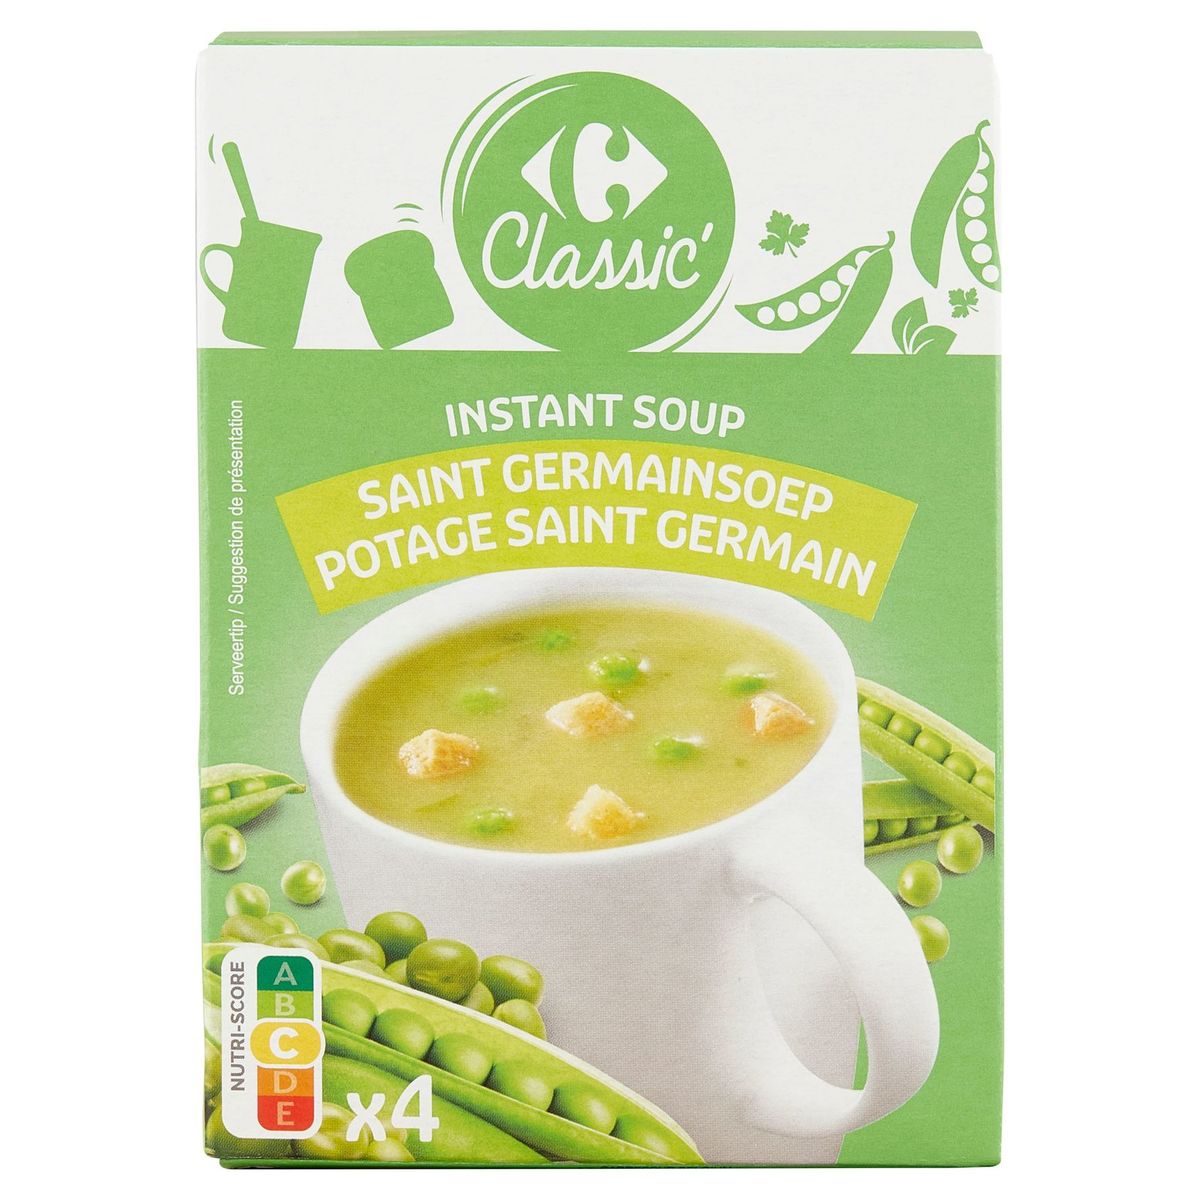 Carrefour Classic' Instant Soup Saint Germainsoep 4 x 20 g